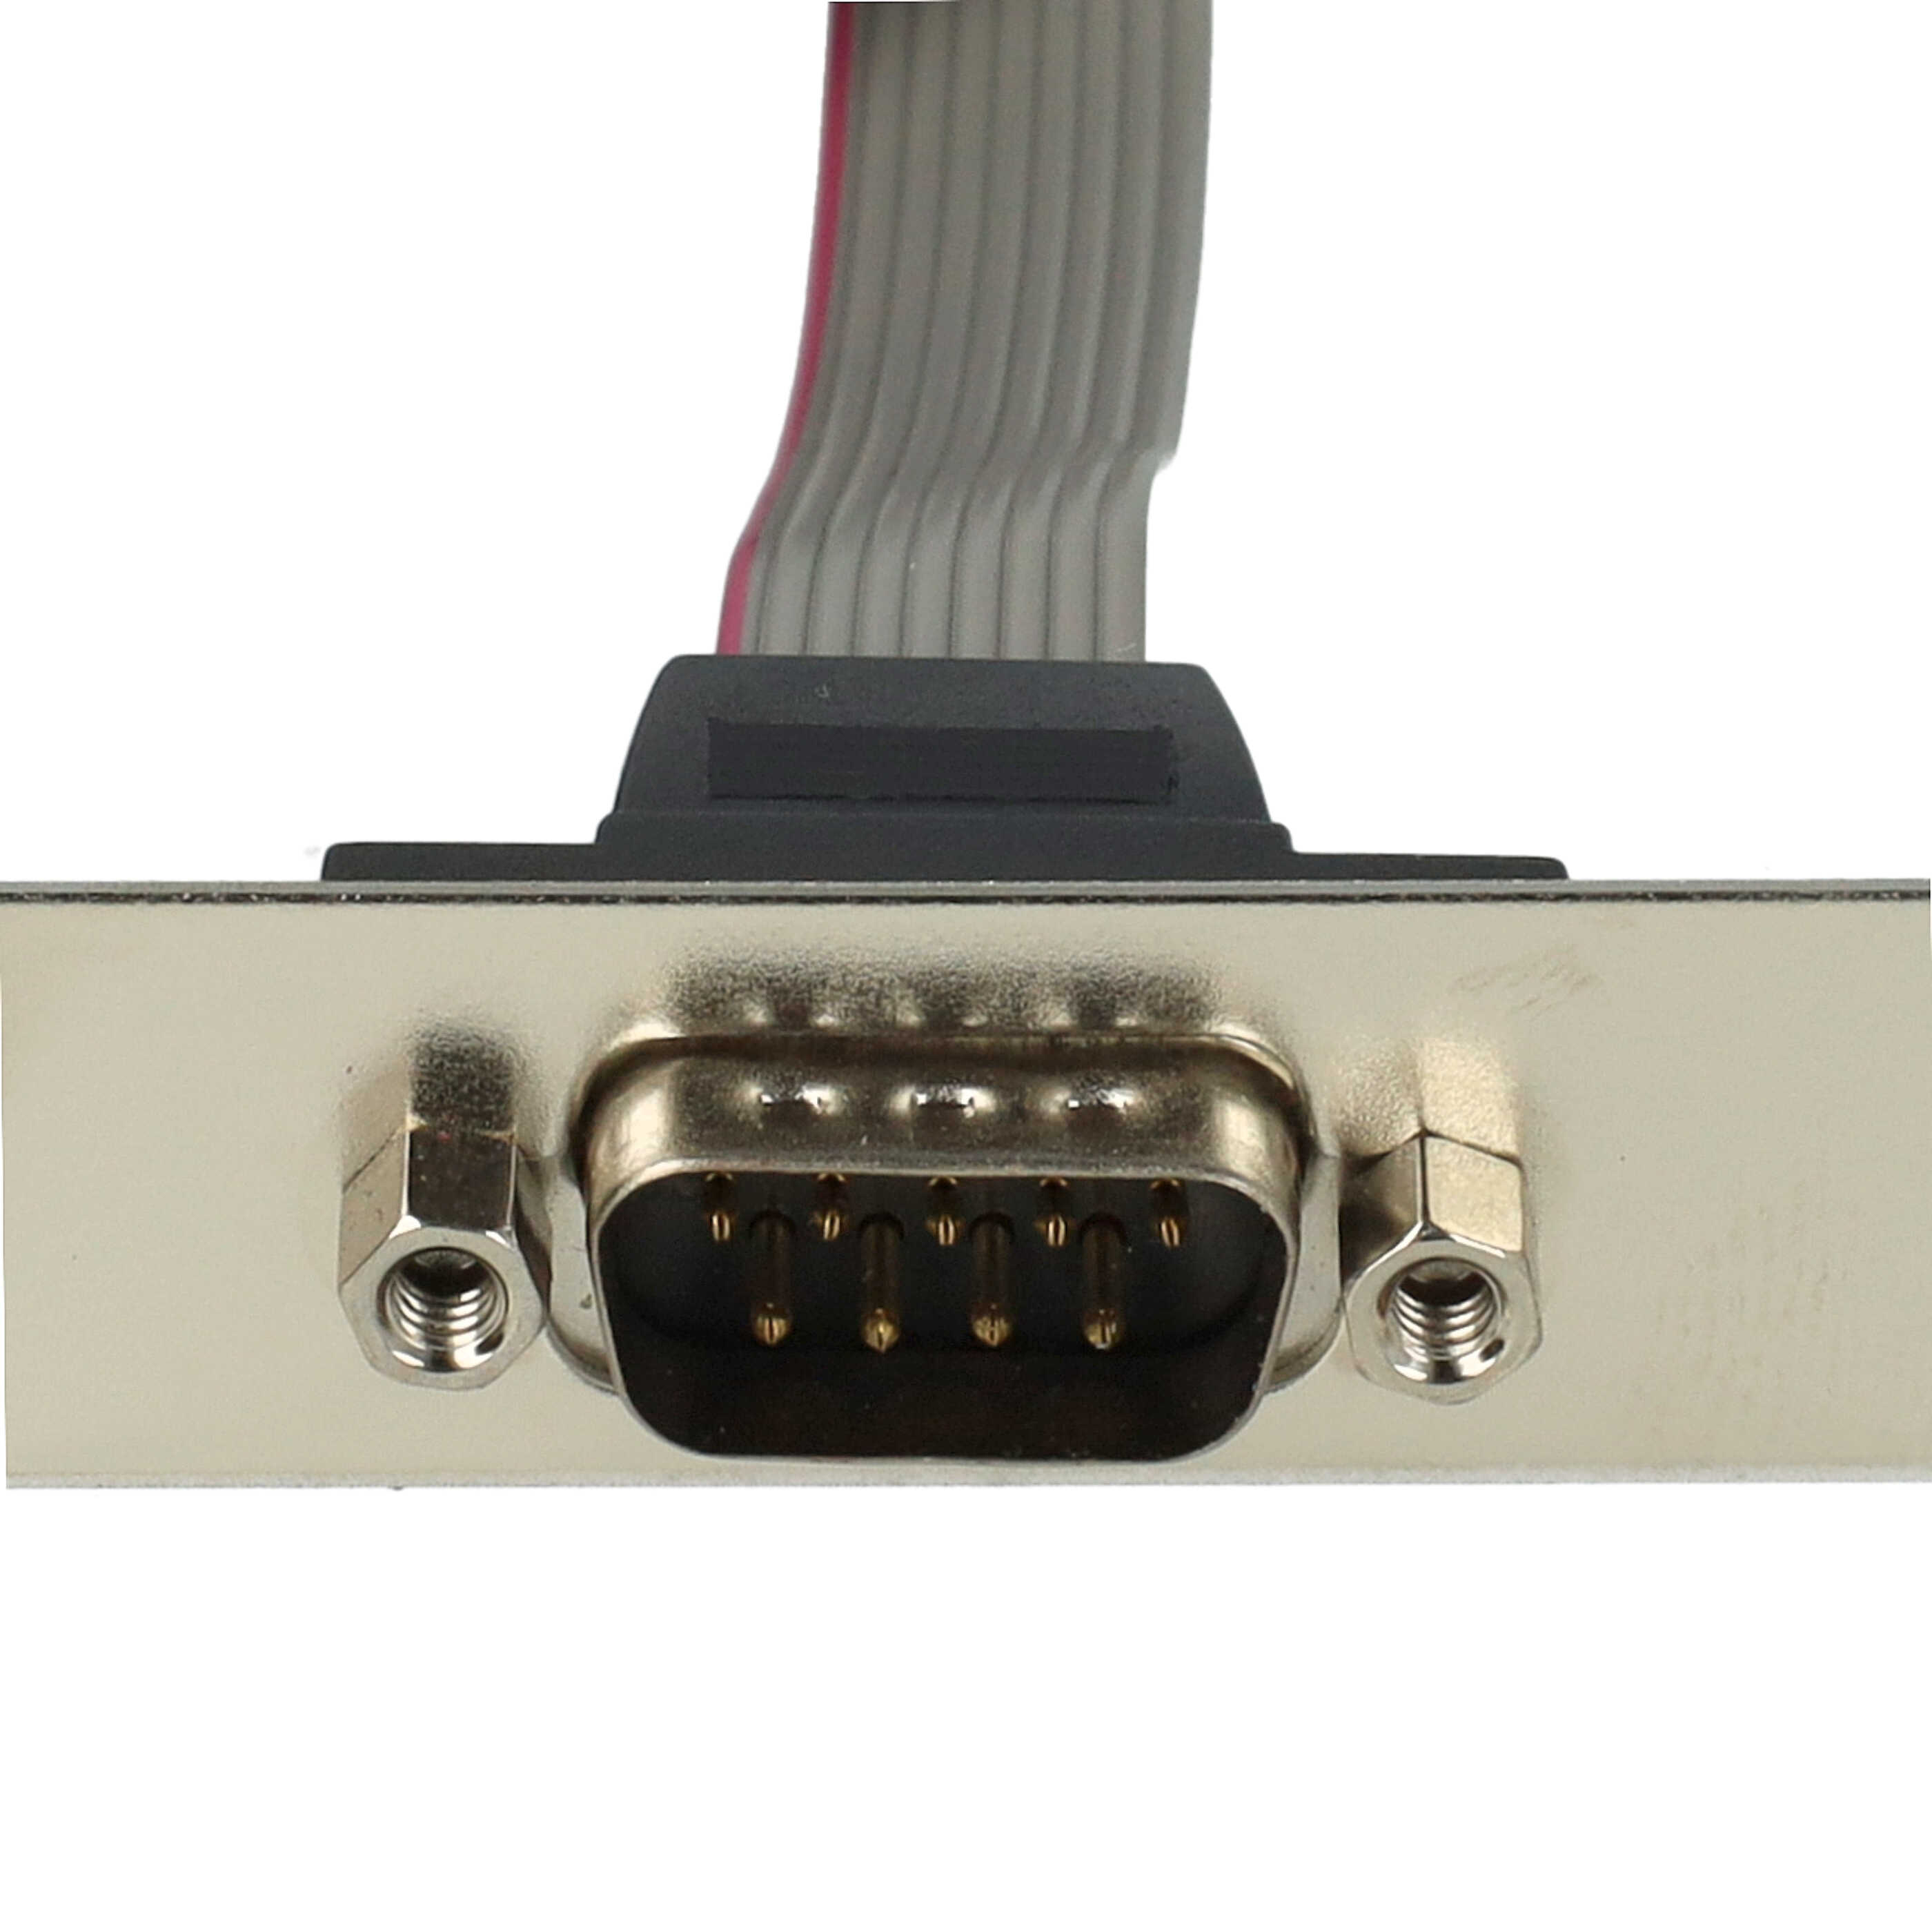 Placa RS232 para ordenador, PC - Con cable de 20 cm al conector RS232 de 10 pines de la placa base